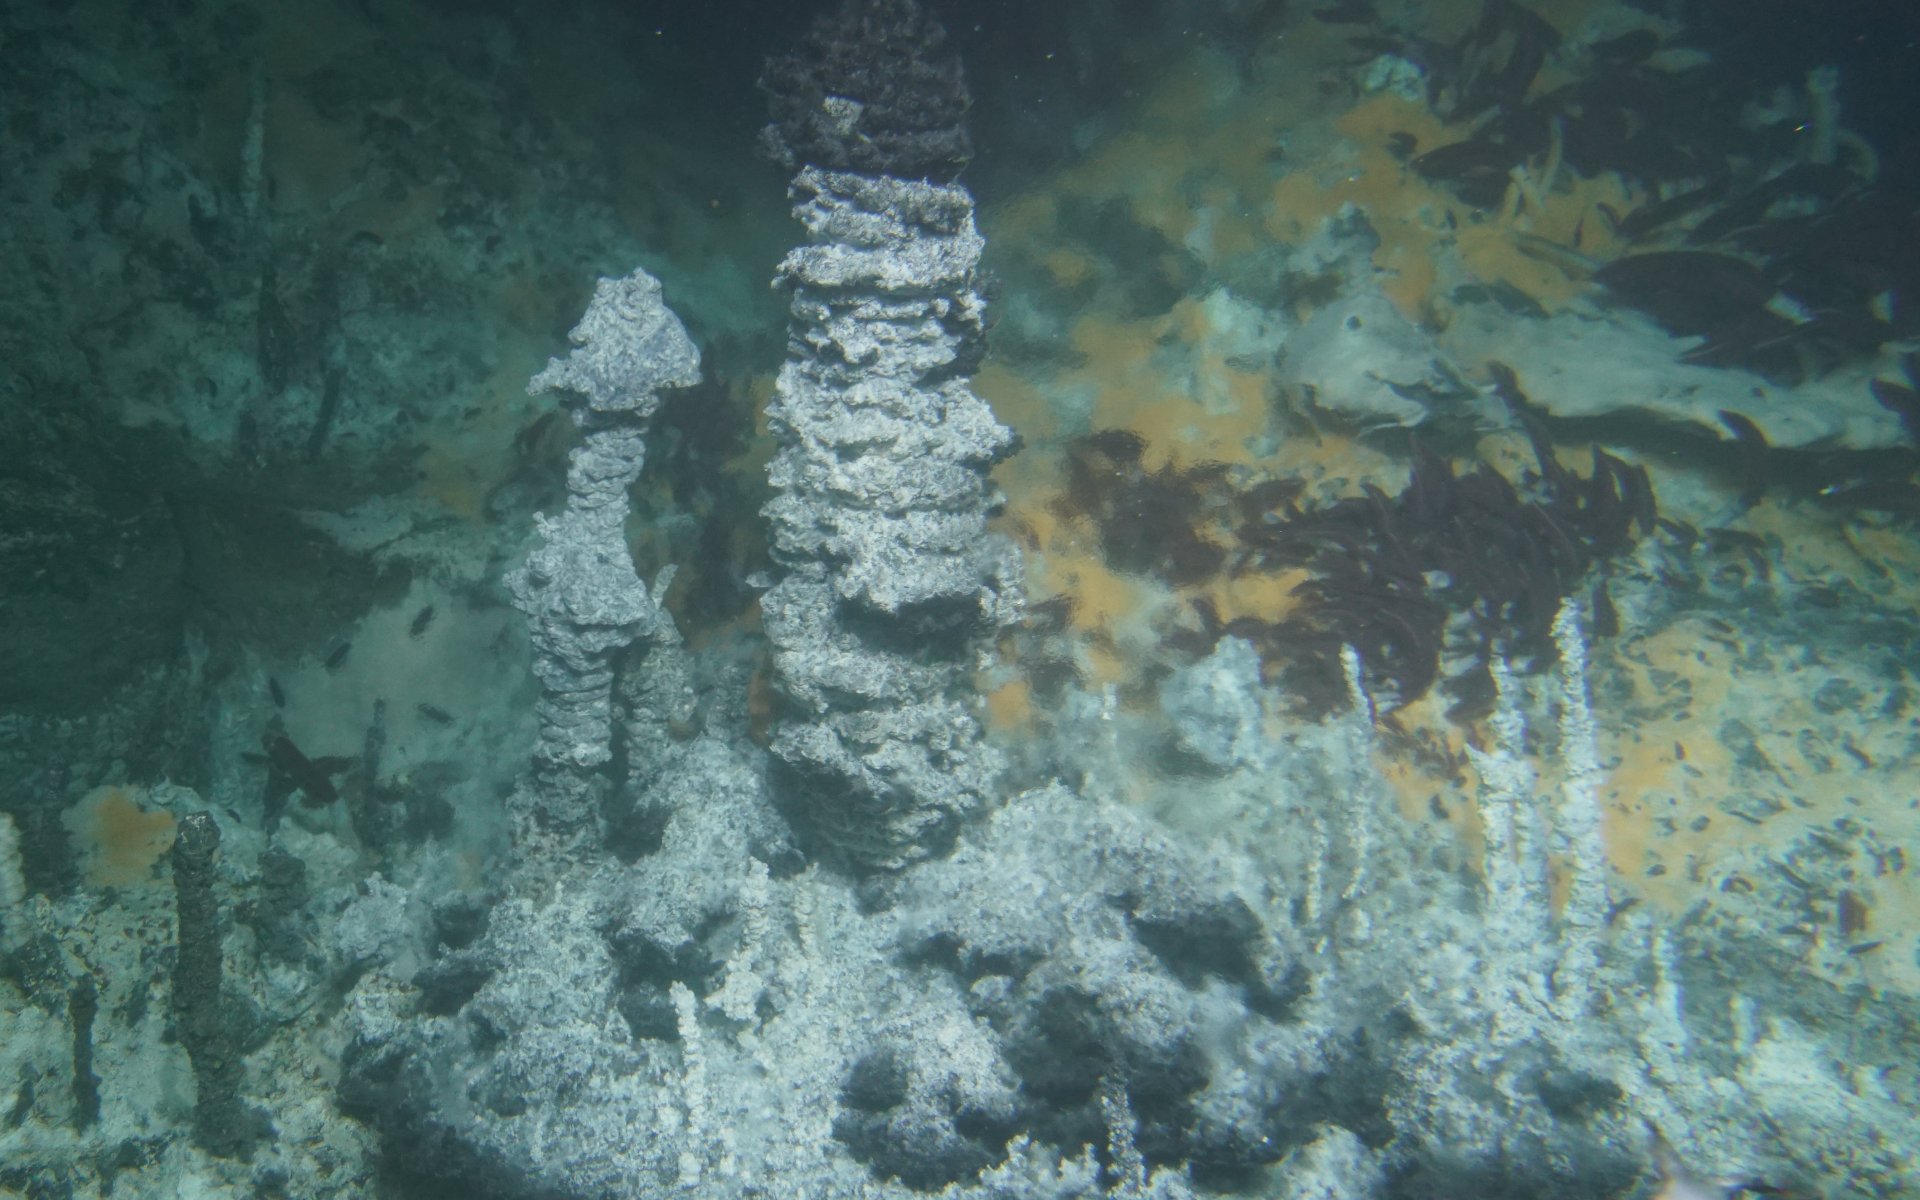 Die hydrothermalen Schlote des Guaymas-Beckens – die „Heimat“ der untersuchten methanoxidierenden Mikroben. Die wärmeliebenden Mikroorganismen gedeihen unter den orangefarbenen mikrobiellen Matten im Hintergrund. Die hohen Temperaturen des aufsteigenden Wassers lassen Teile des Bildes verschwimmen. © Woods Hole Oceanographic Institution